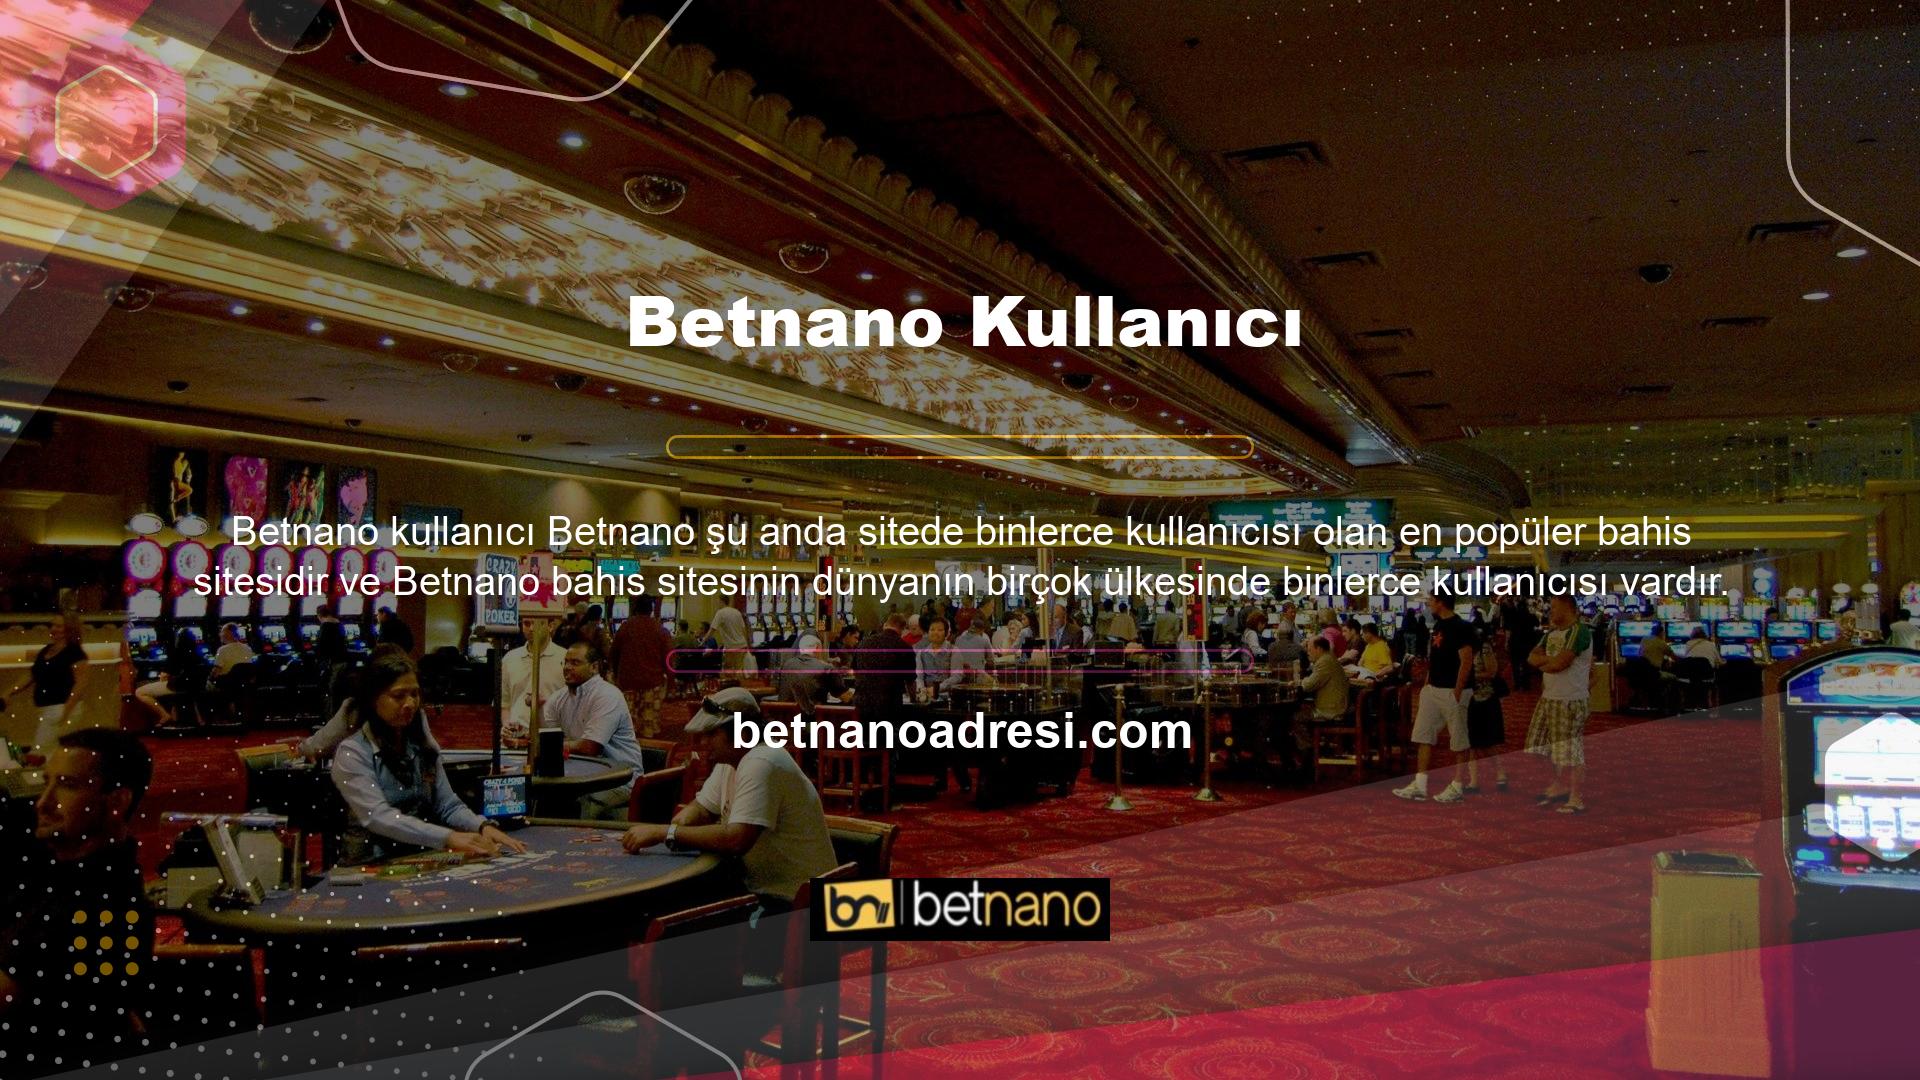 Betnano web sitesi Türk oyunculara sınırsız güvenlik sunmaktadır